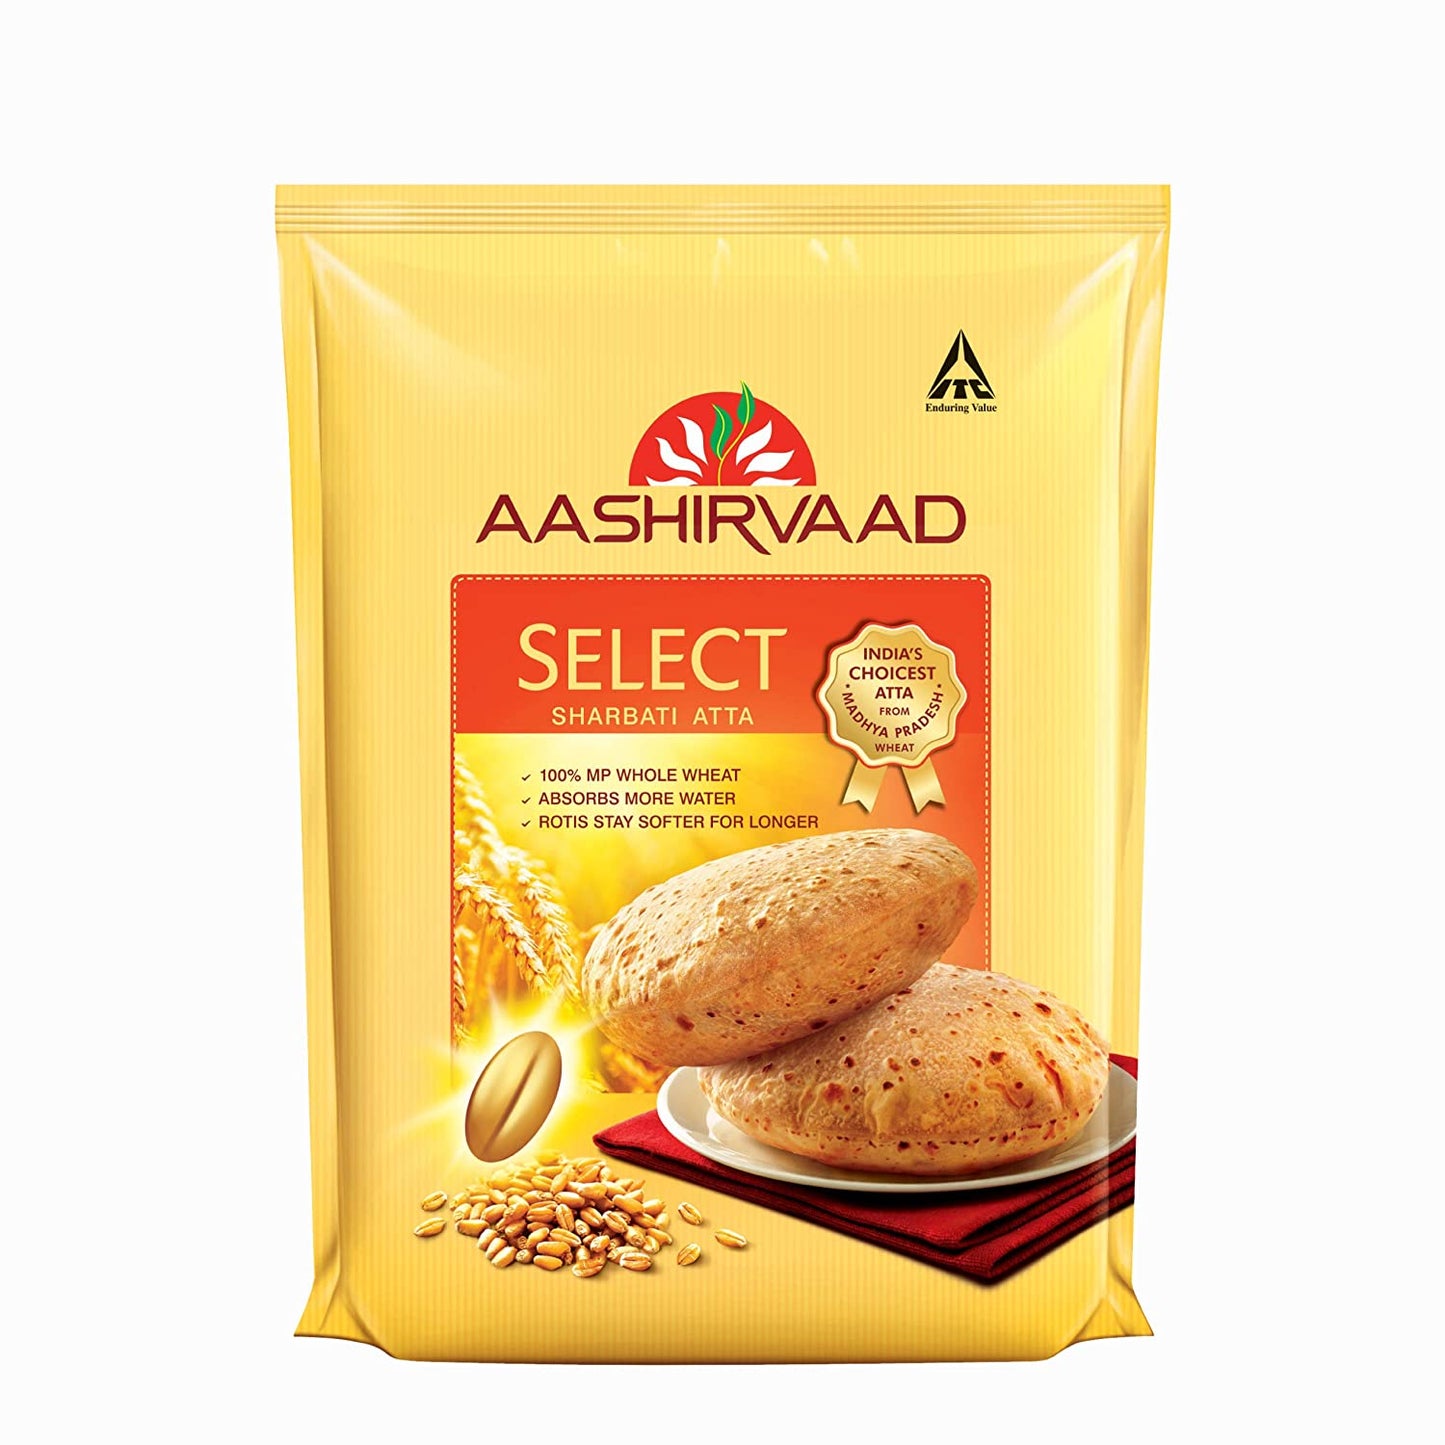 Aashirvaad Select Whole Wheat Sharbati Atta, 5 Kg